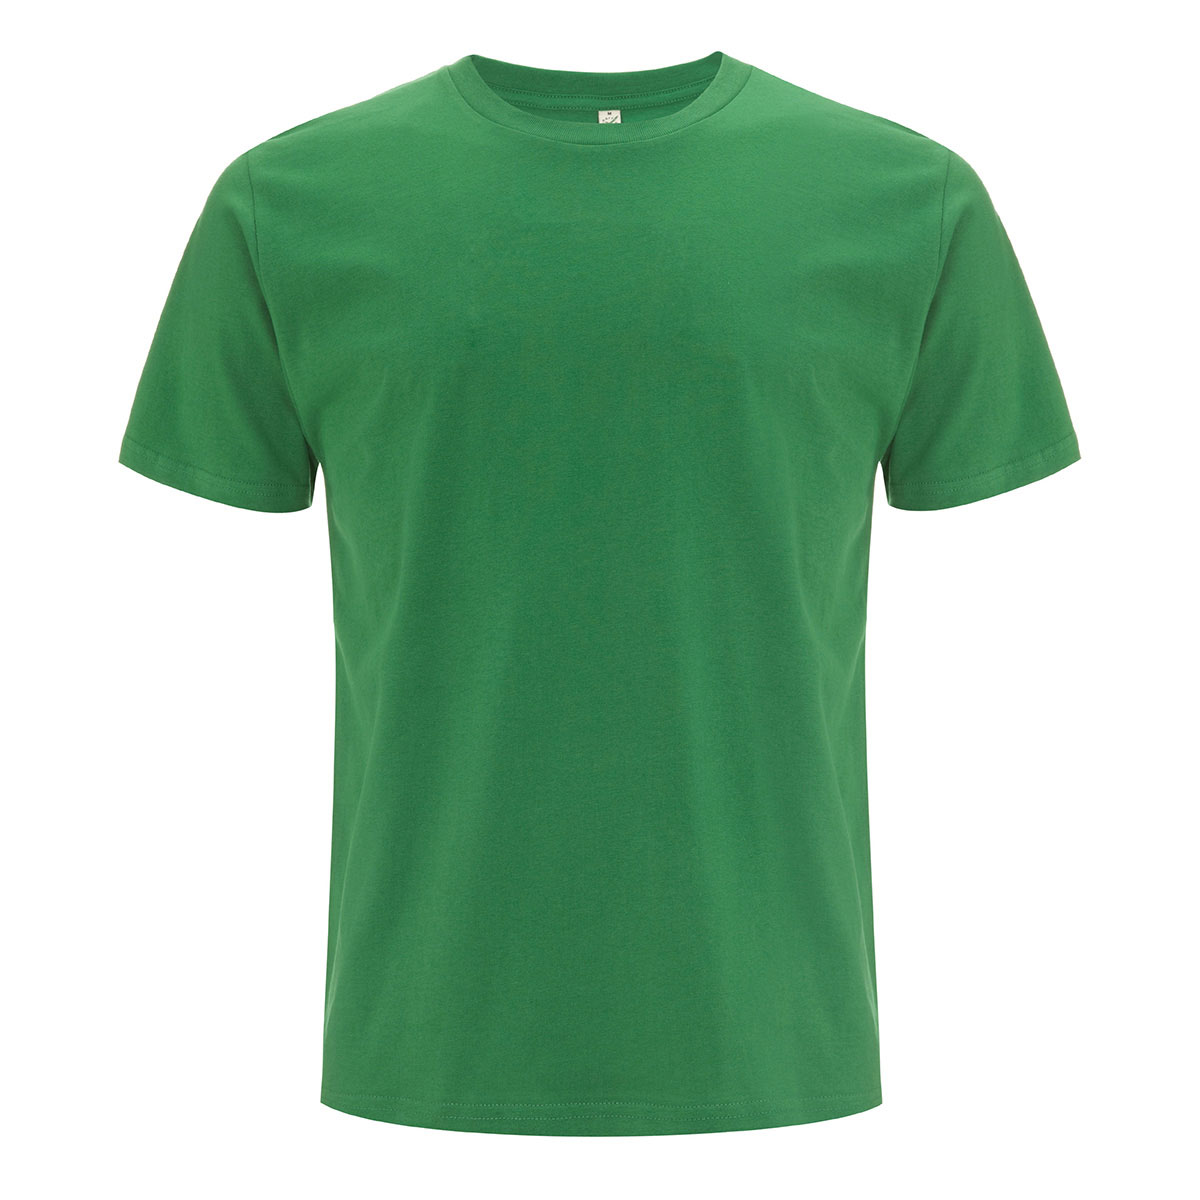 Voorwoord trek de wol over de ogen Stiptheid Groen T-shirt van biologische katoen/Continental Clothing